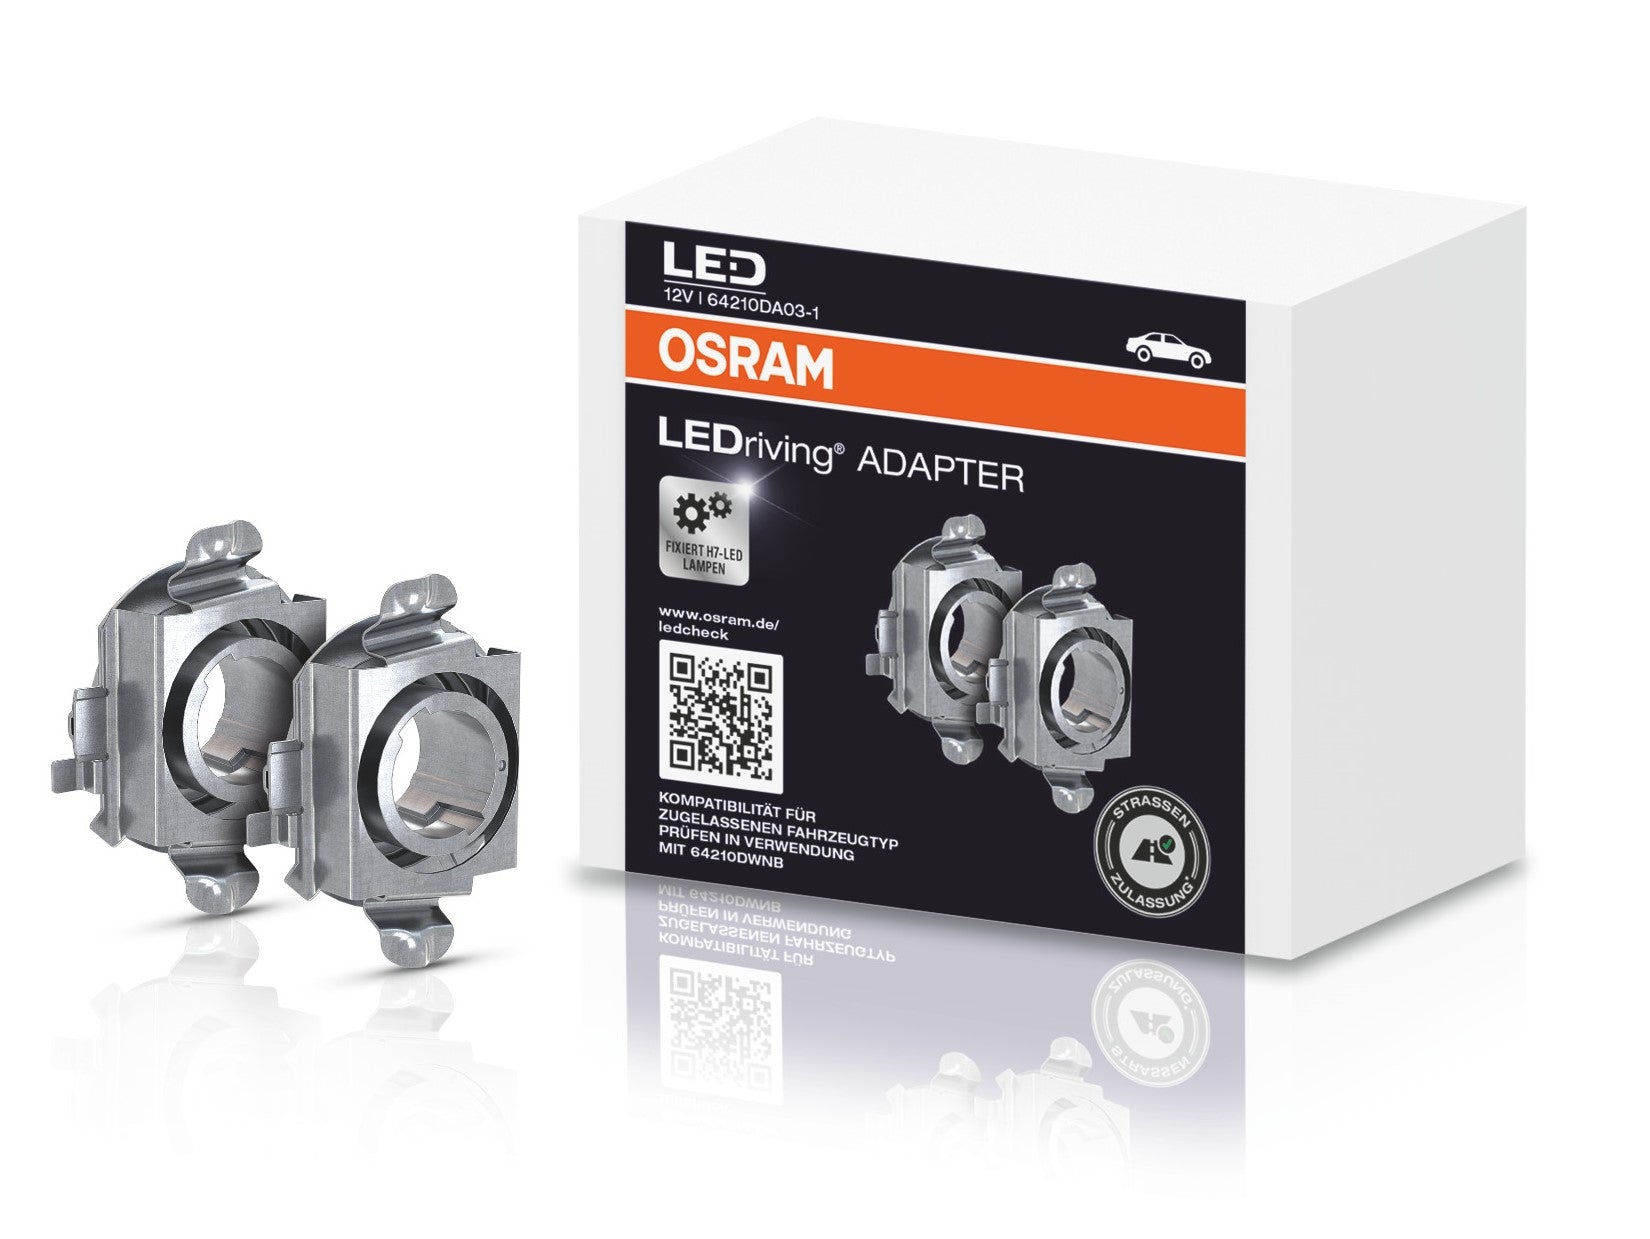 H7 NIGHT BREAKER LED LED-Nachrüstlampe 220% mehr Helligkeit OSRAM – Kummert  Business eCommerce